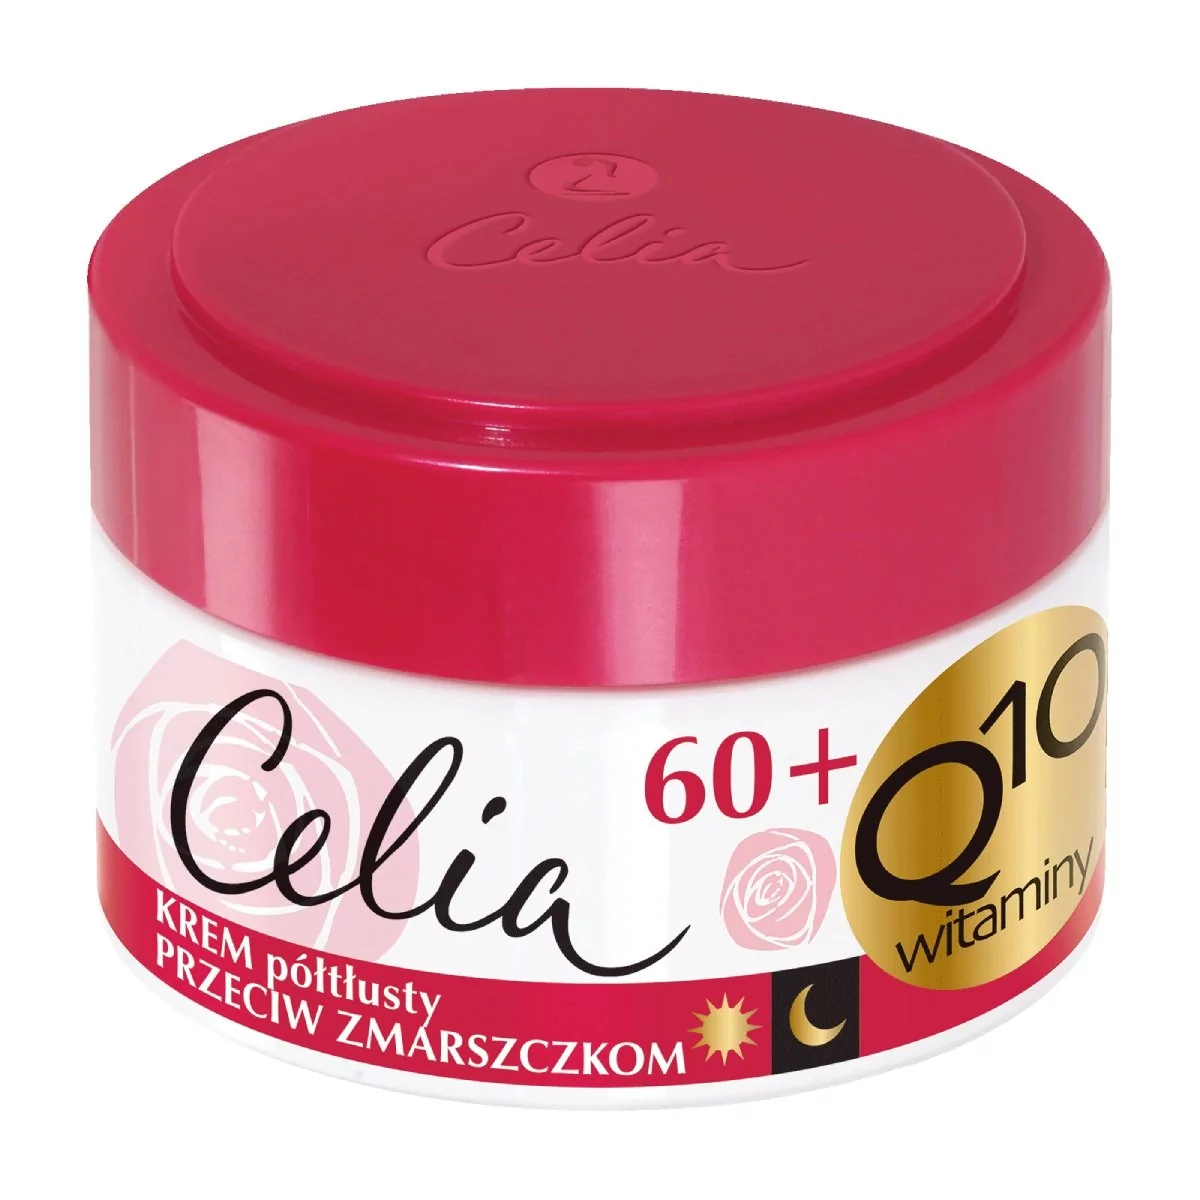 DAX Cosmetics Celia Celia Q10 krem przeciwzmarszczkowy regenerujący z ceramidami 60+